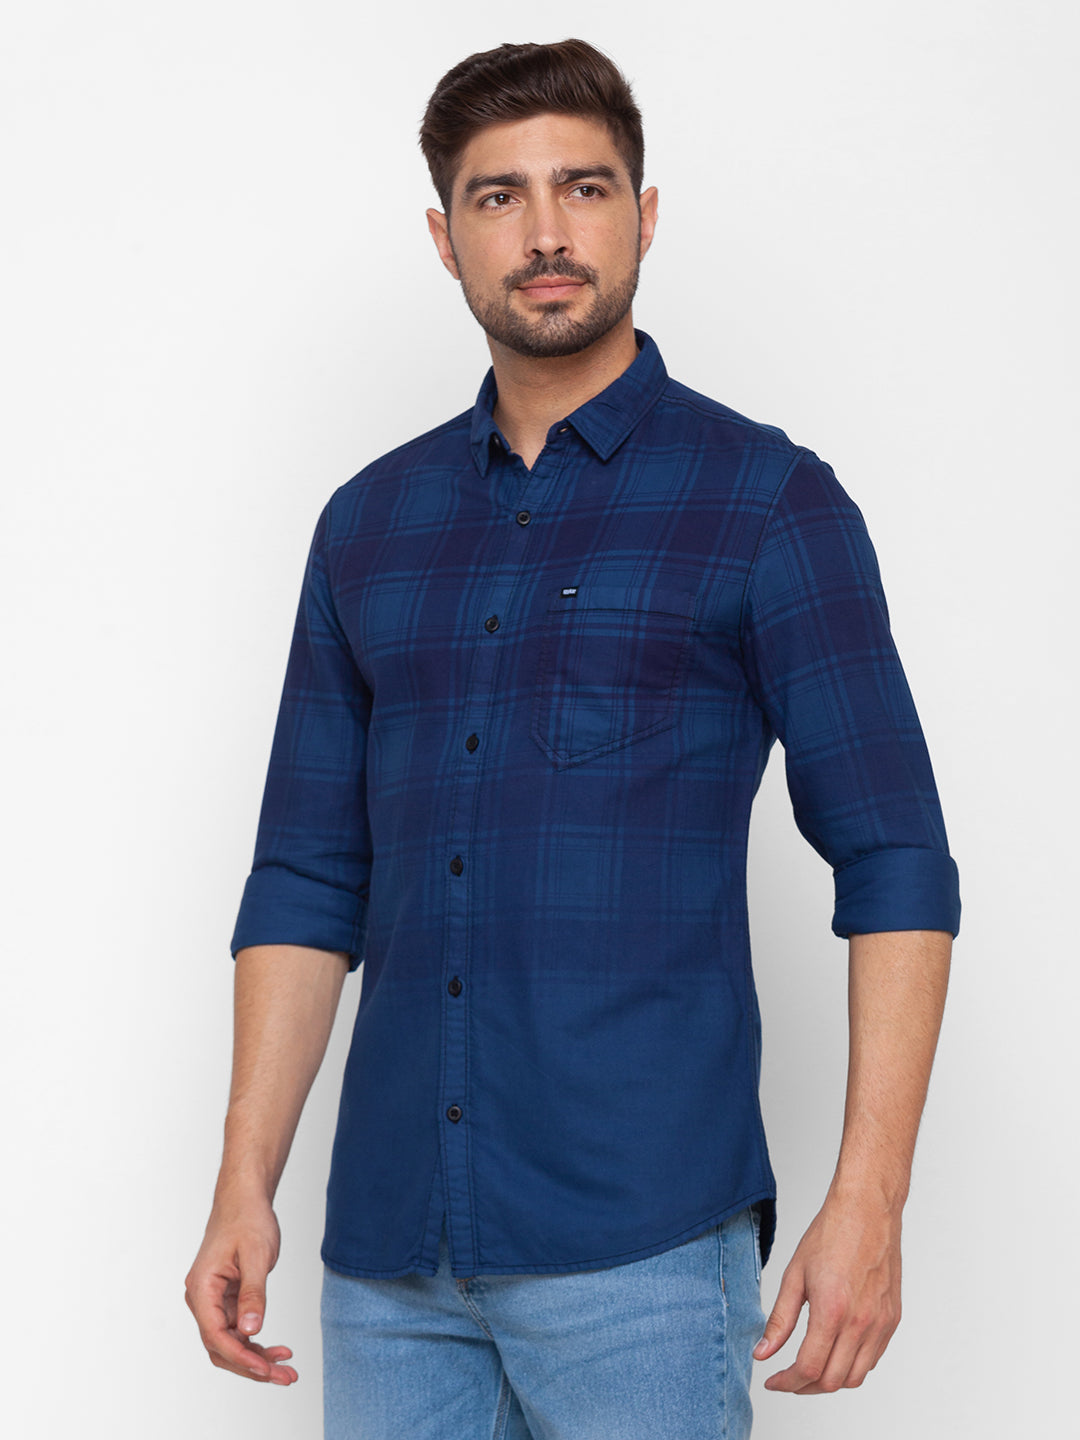 Spykar Cobal Light Blue Cotton Full Sleeve Checks Shirt For Men